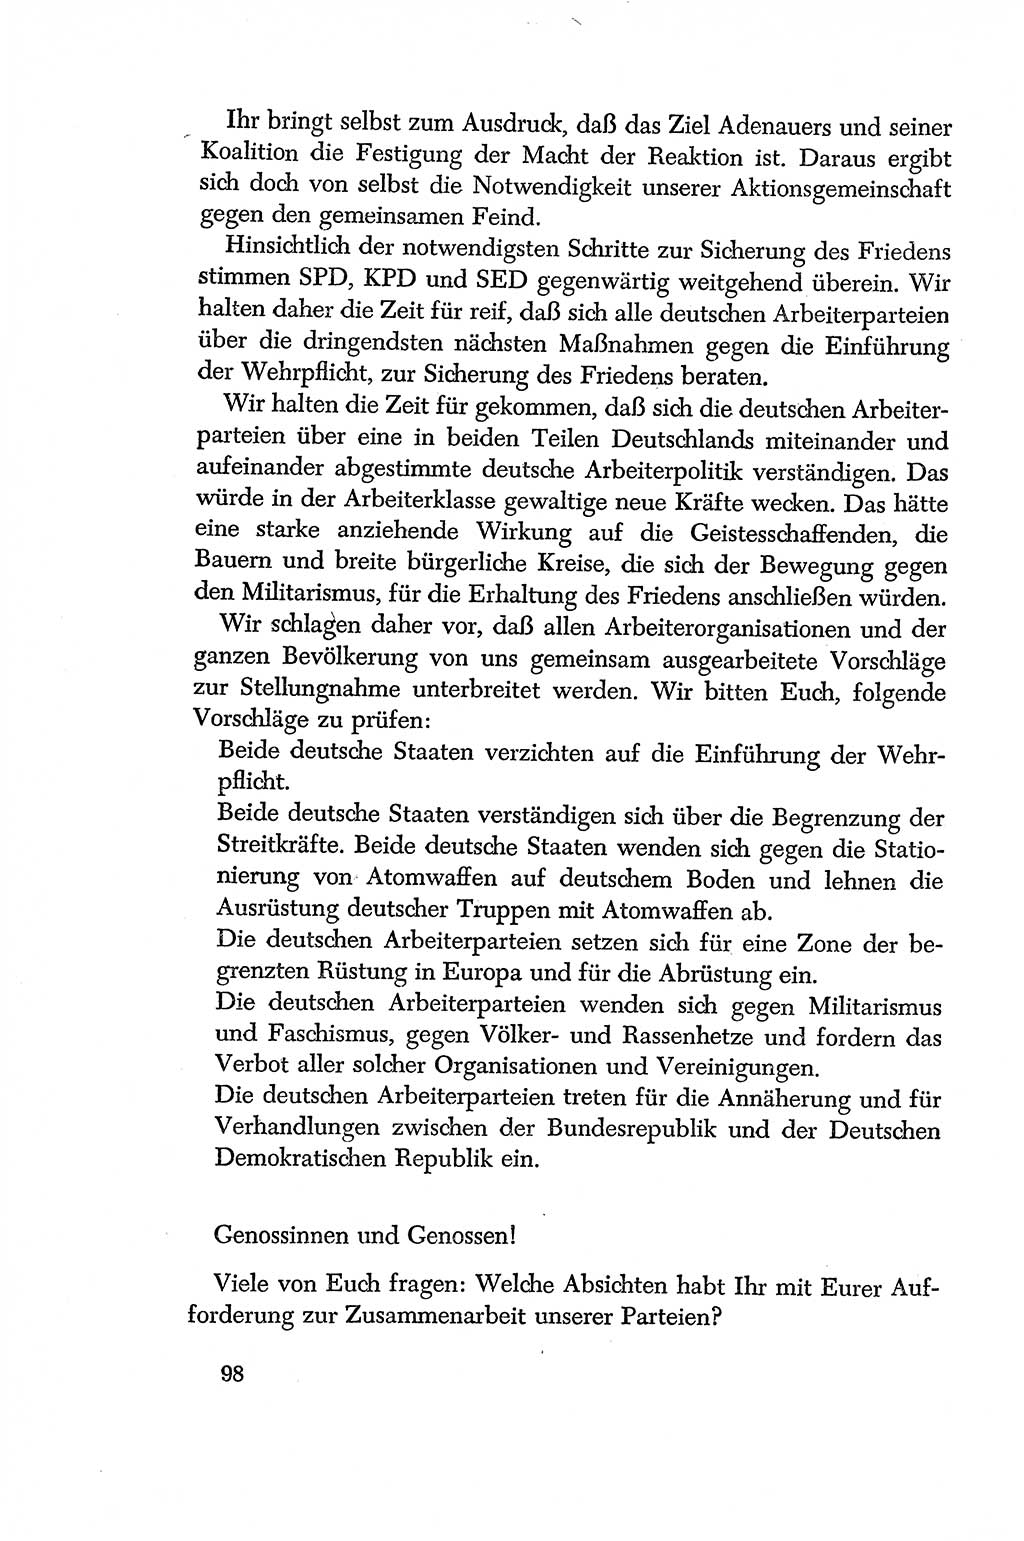 Dokumente der Sozialistischen Einheitspartei Deutschlands (SED) [Deutsche Demokratische Republik (DDR)] 1956-1957, Seite 98 (Dok. SED DDR 1956-1957, S. 98)